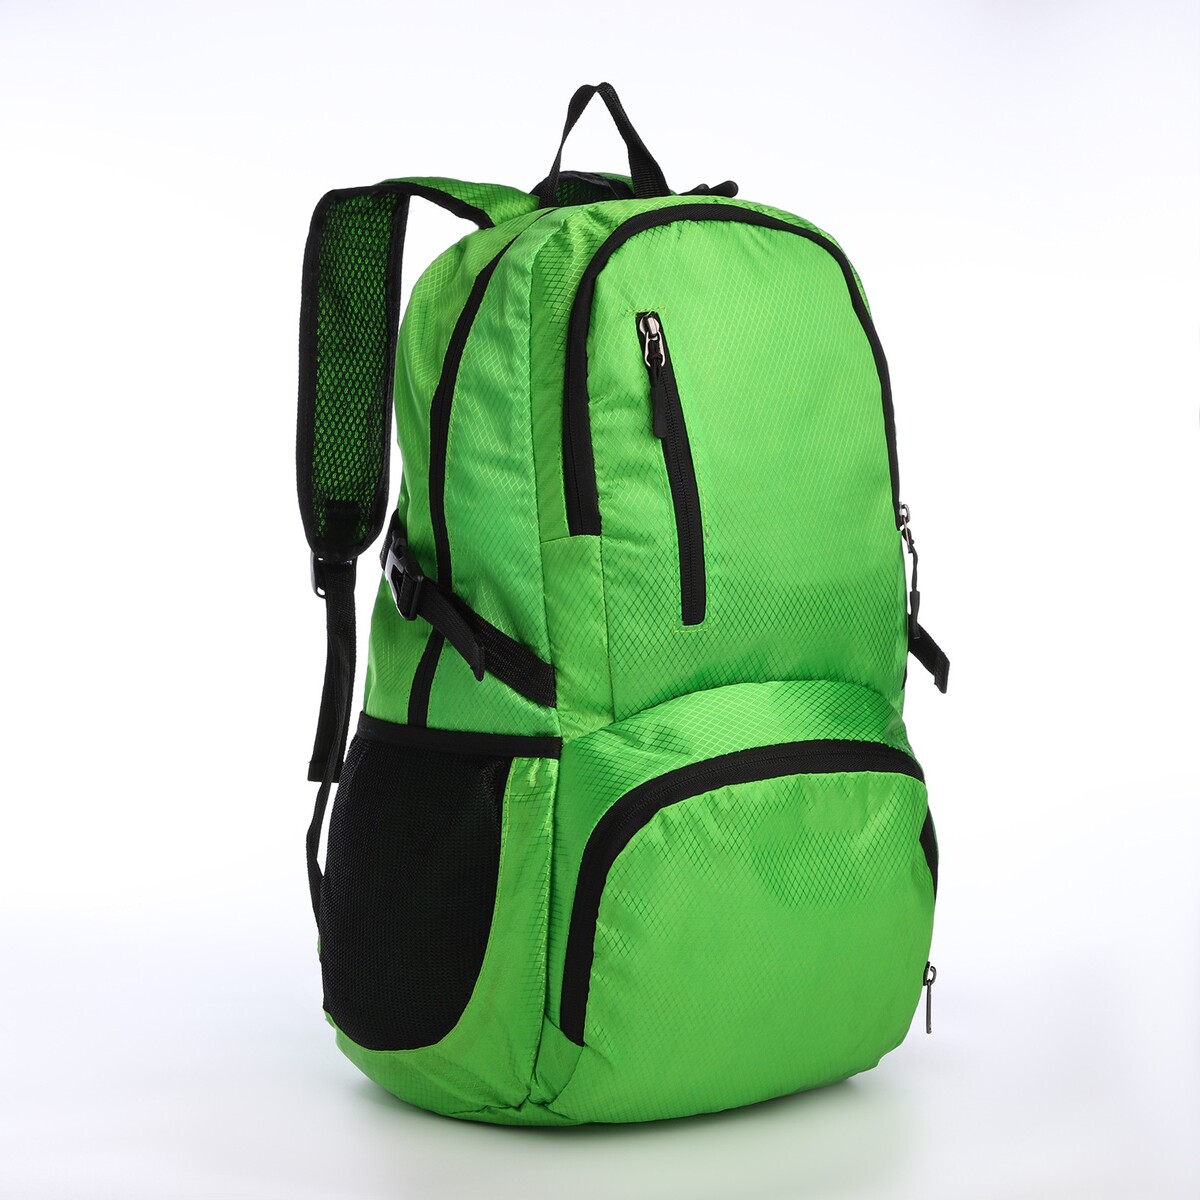 Рюкзак складной на молнии из текстиля, 5 карманов, цвет зеленый